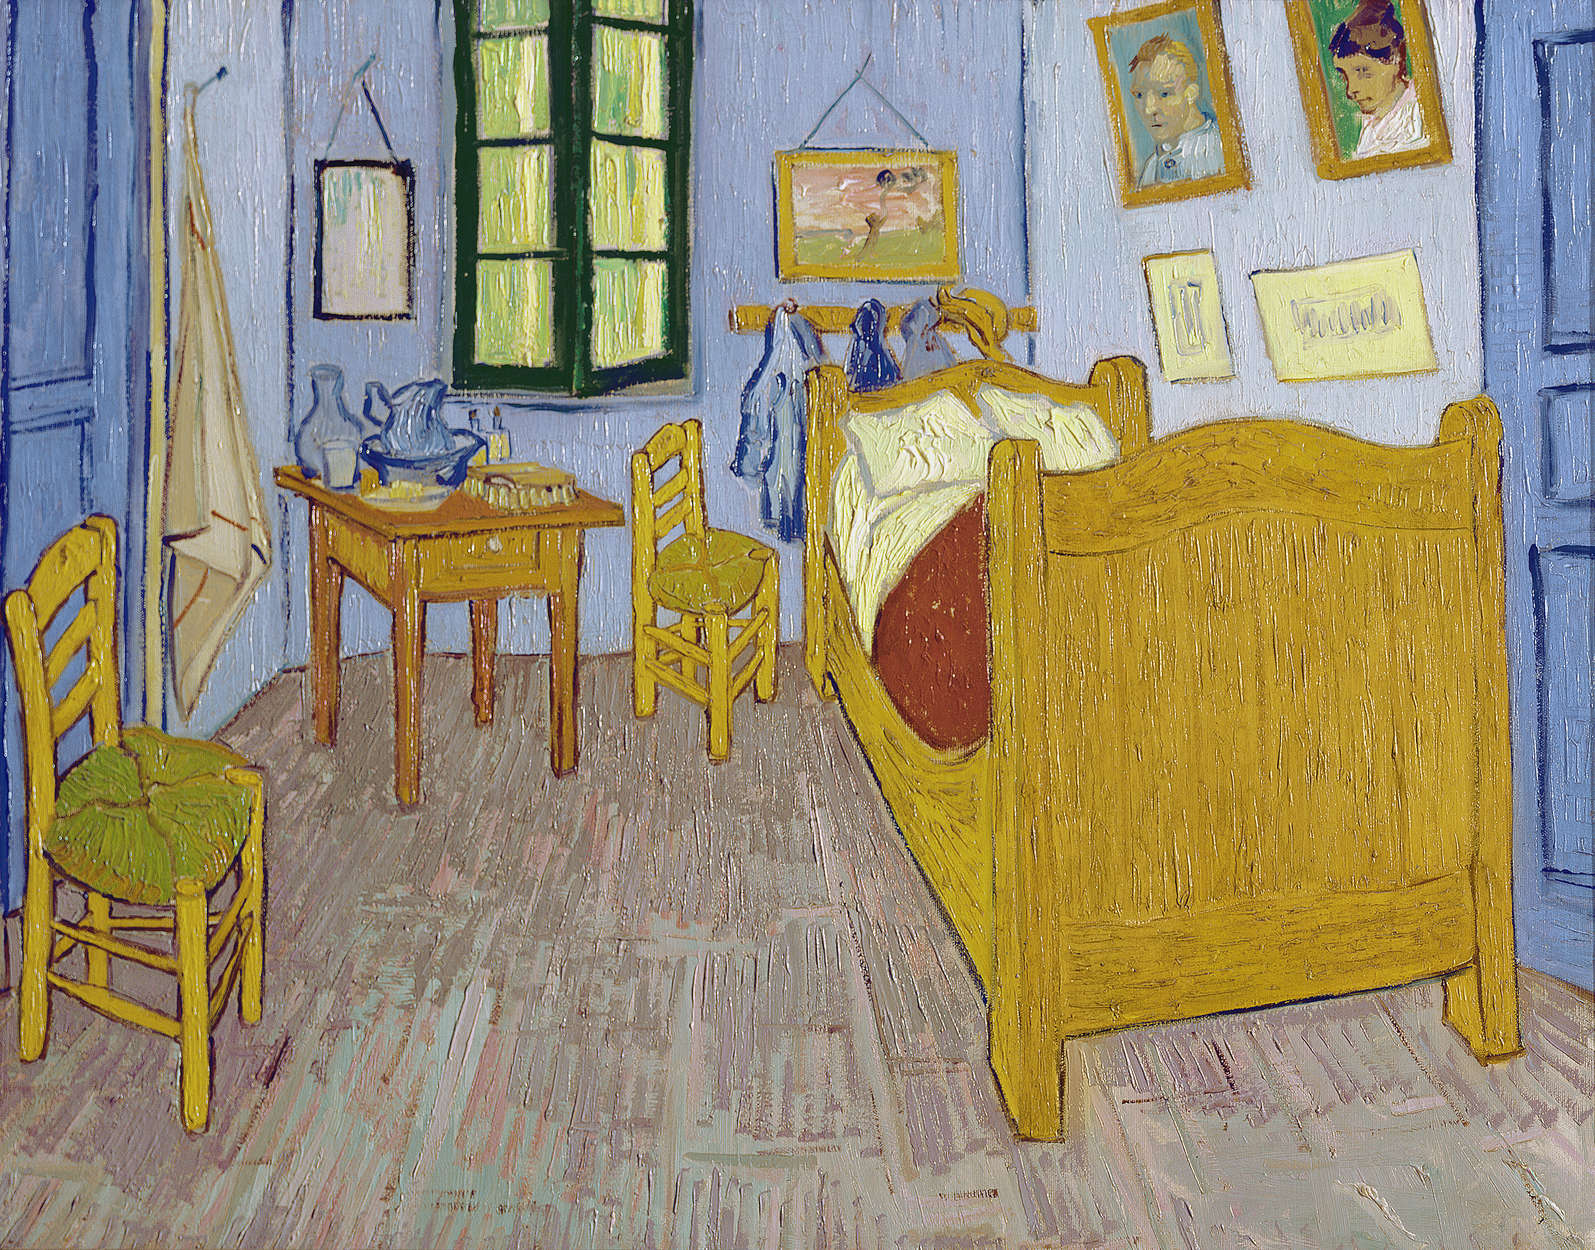             Vincent van Gogh "Vincents slaapkamer in Arles" Muurschildering
        